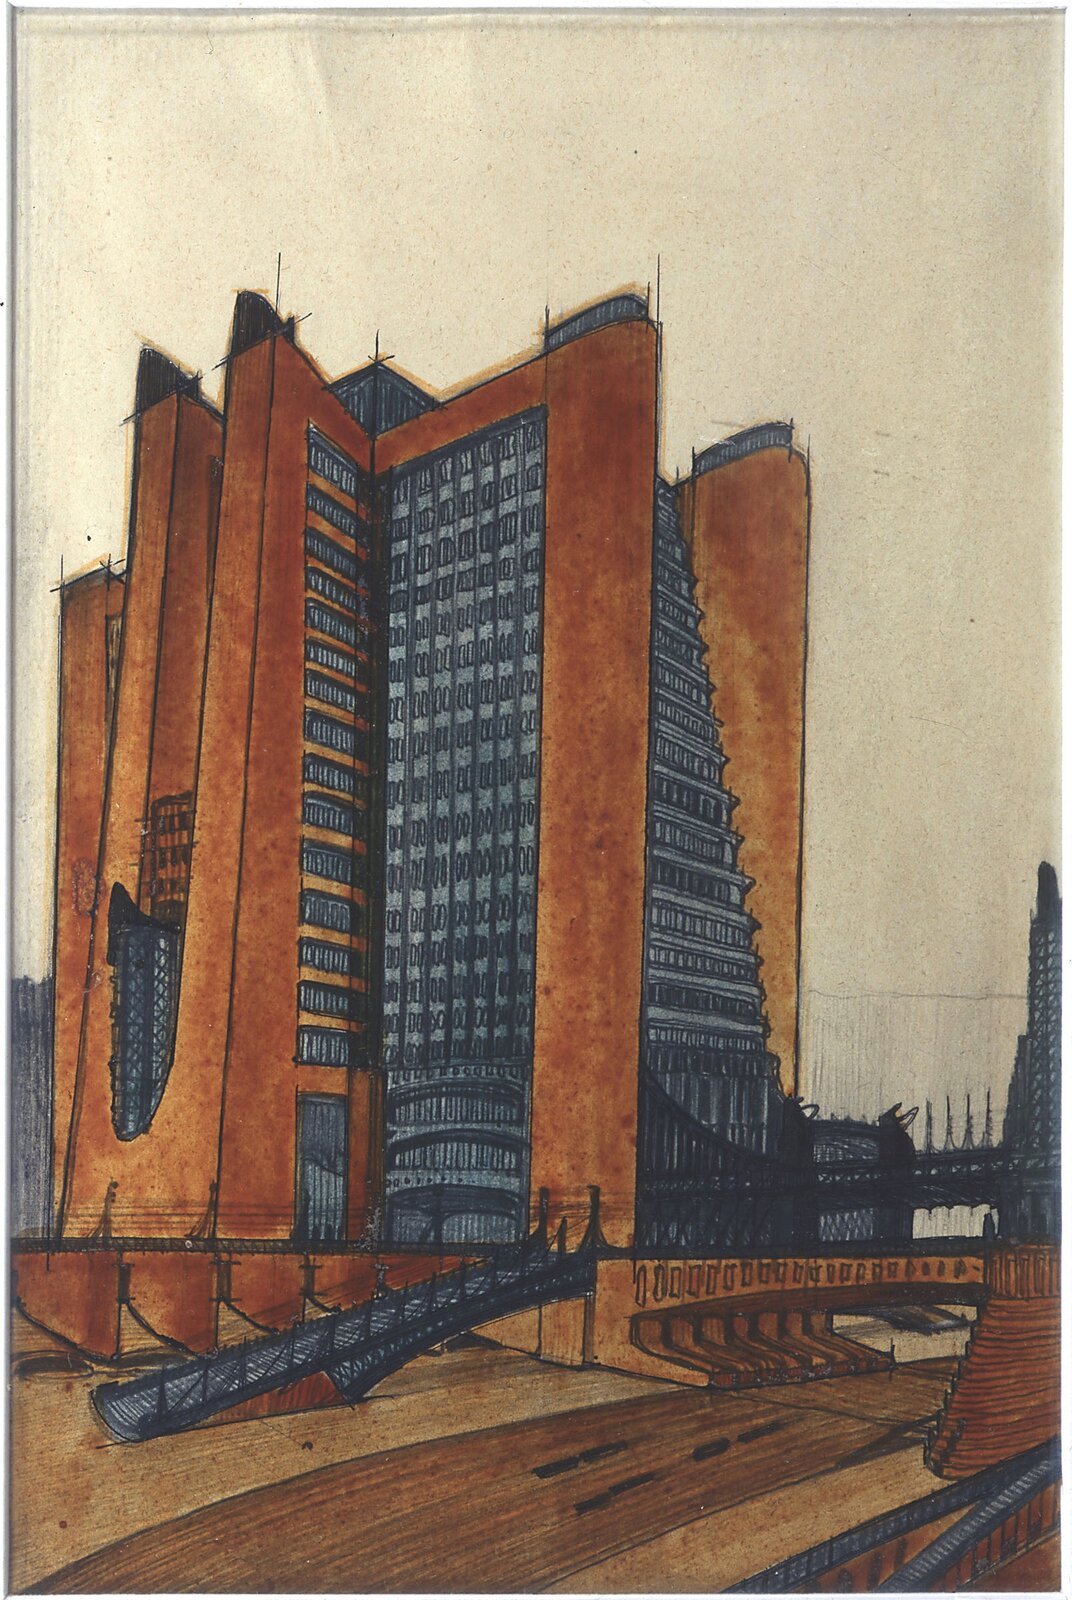 Ilustracja przedstawia obraz Antoniego Sant'Elia, „La Cita Nuova”. Na obrazie znajduje projekt architektoniczny wysokiego wieżowca. Budynek jest pomarańczowo-granatowy. Przed budynkiem znajduje się wiadukt.